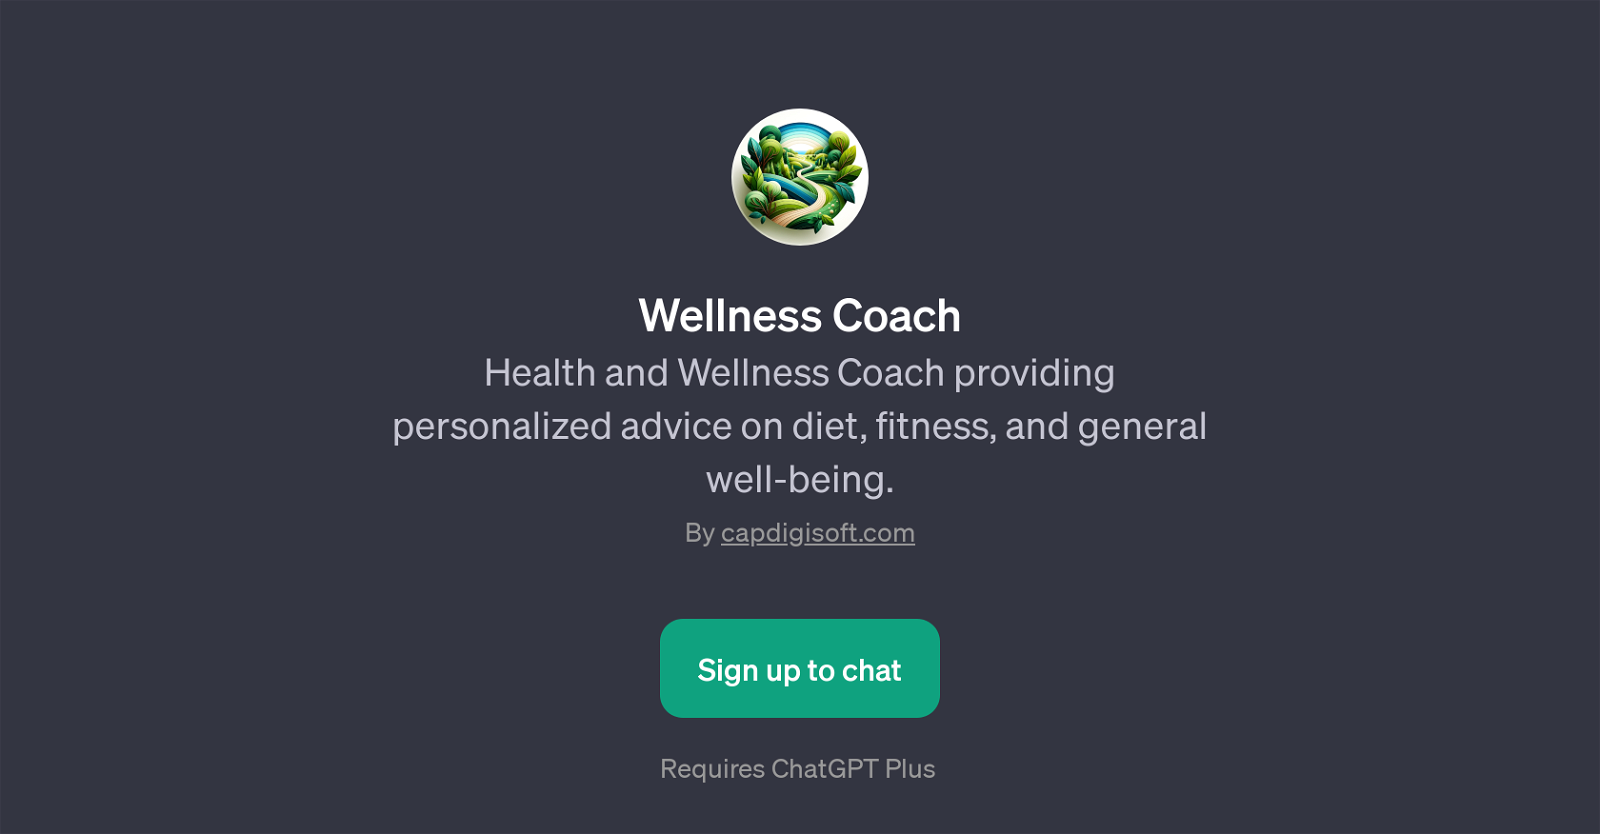 Wellness Coach website